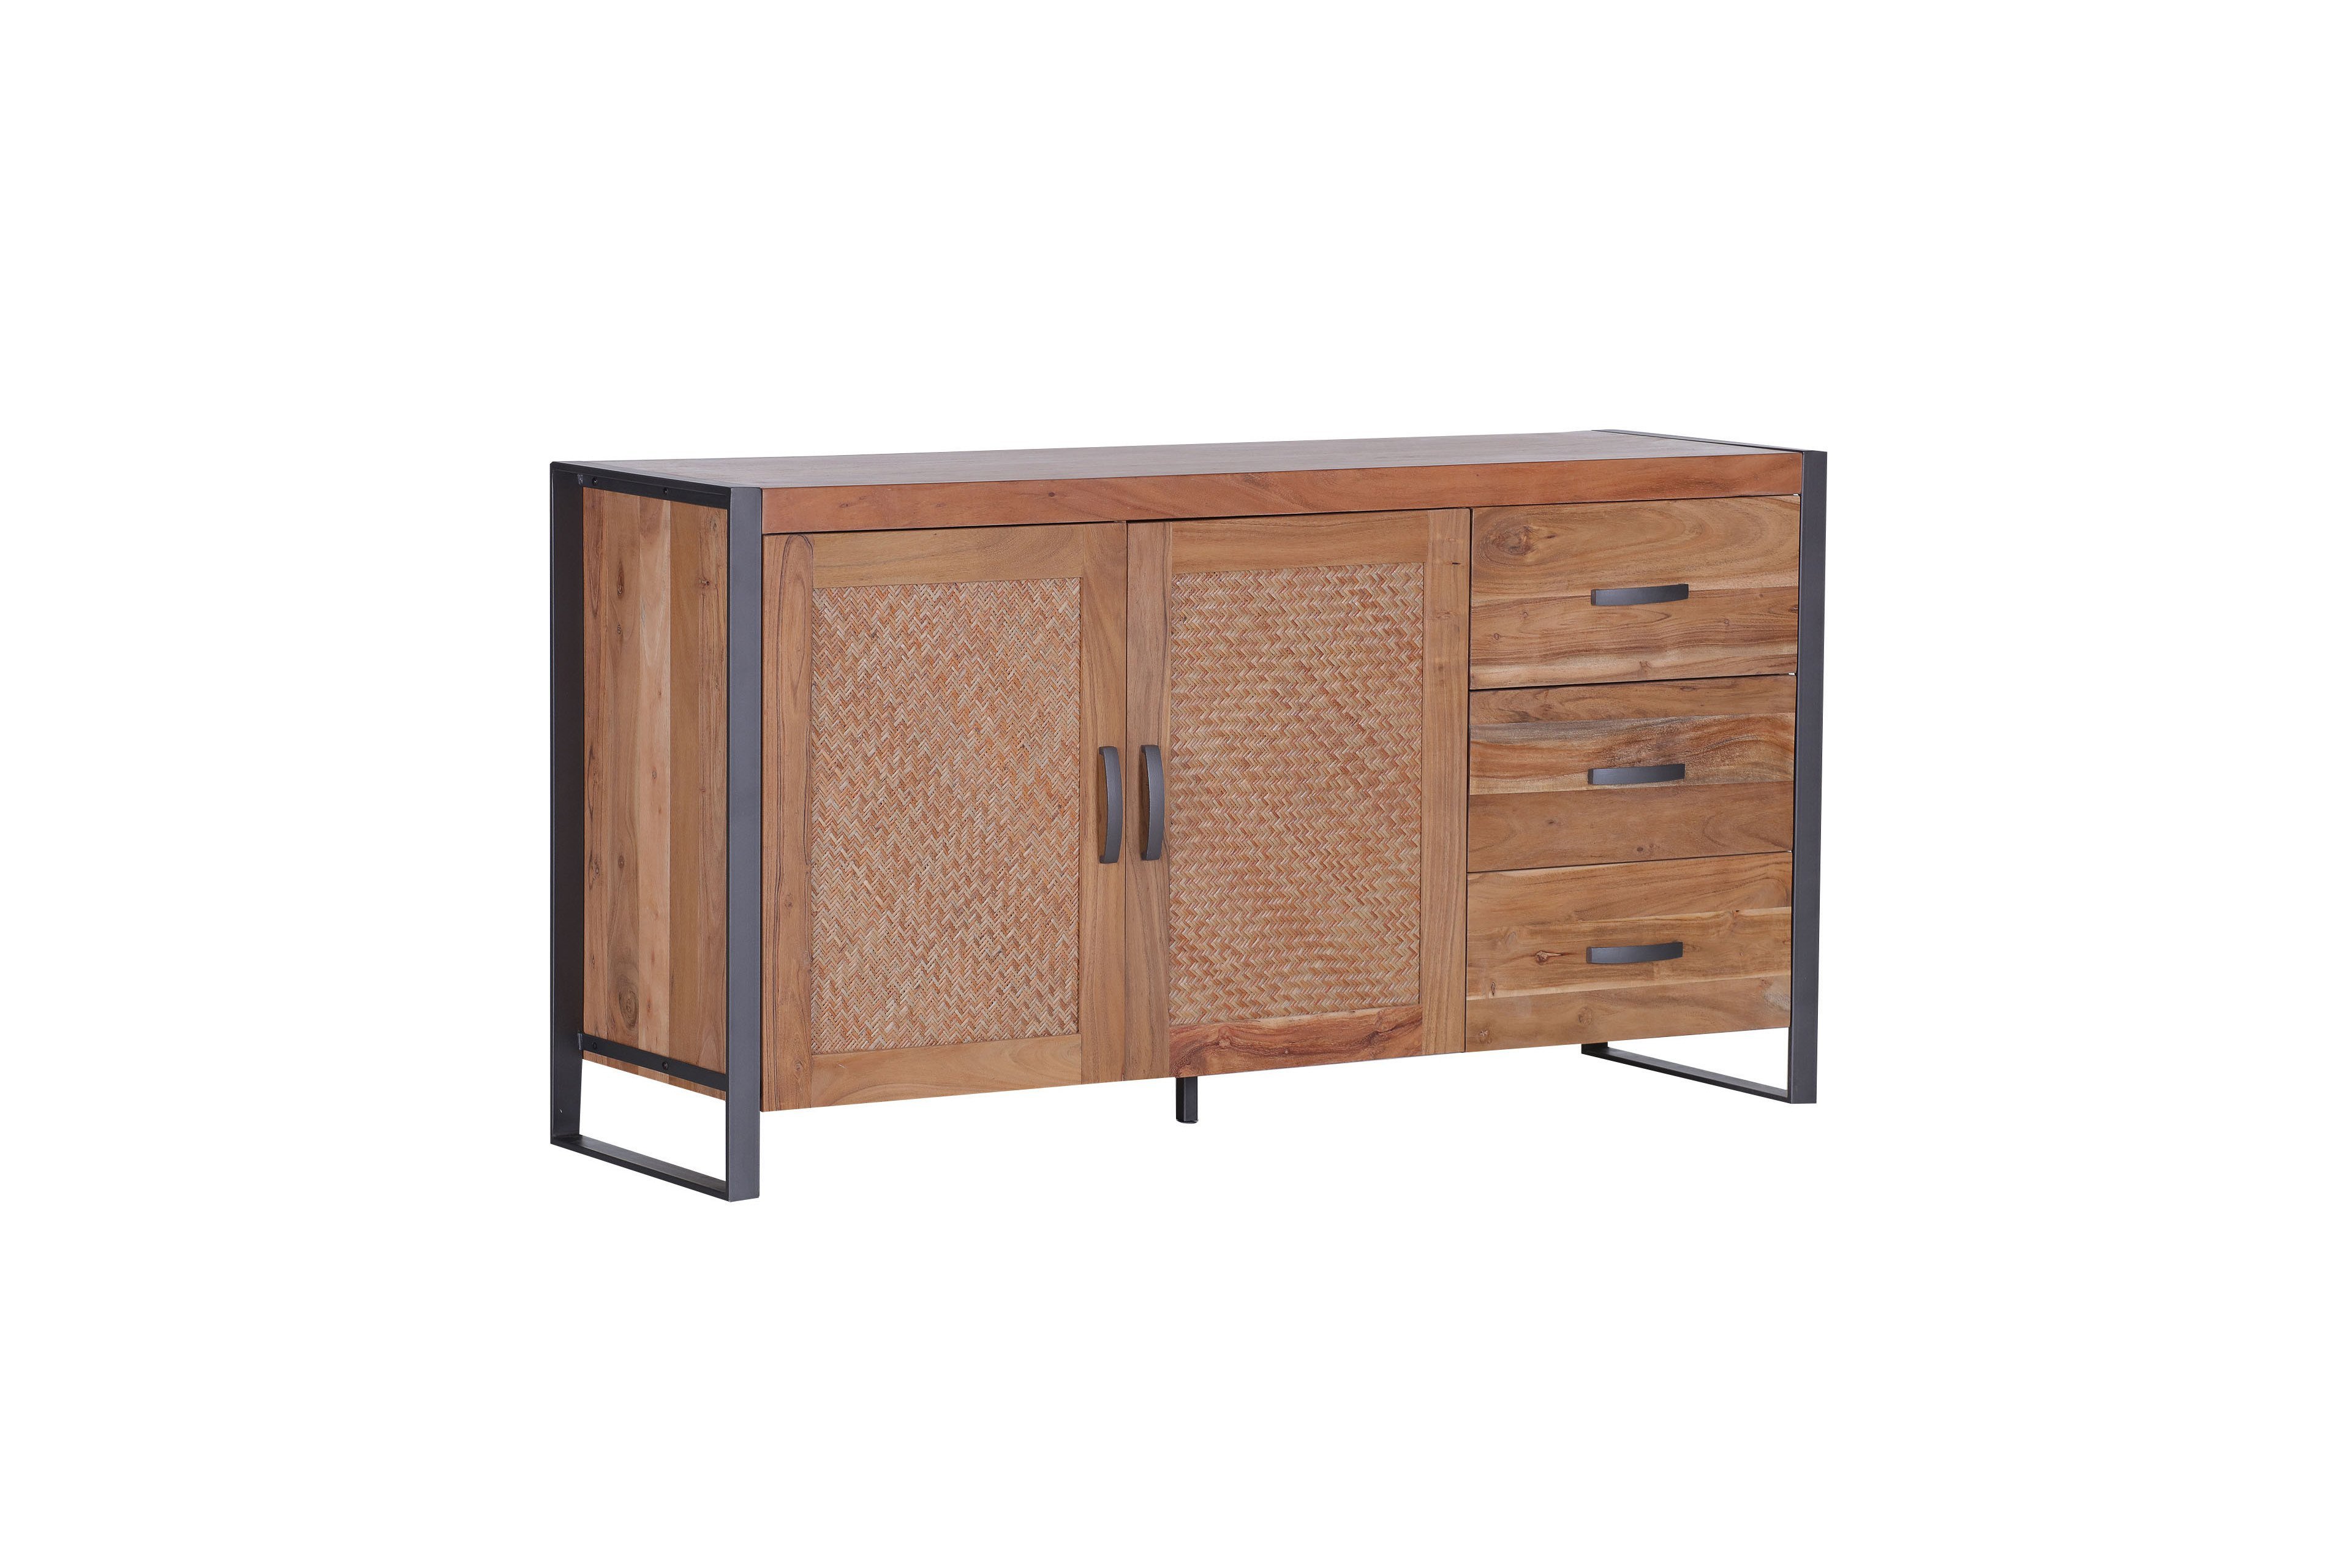 GUTMANN Sideboard 66460 Möbel | Online-Shop Alvara Akazienholz - Ihr Letz